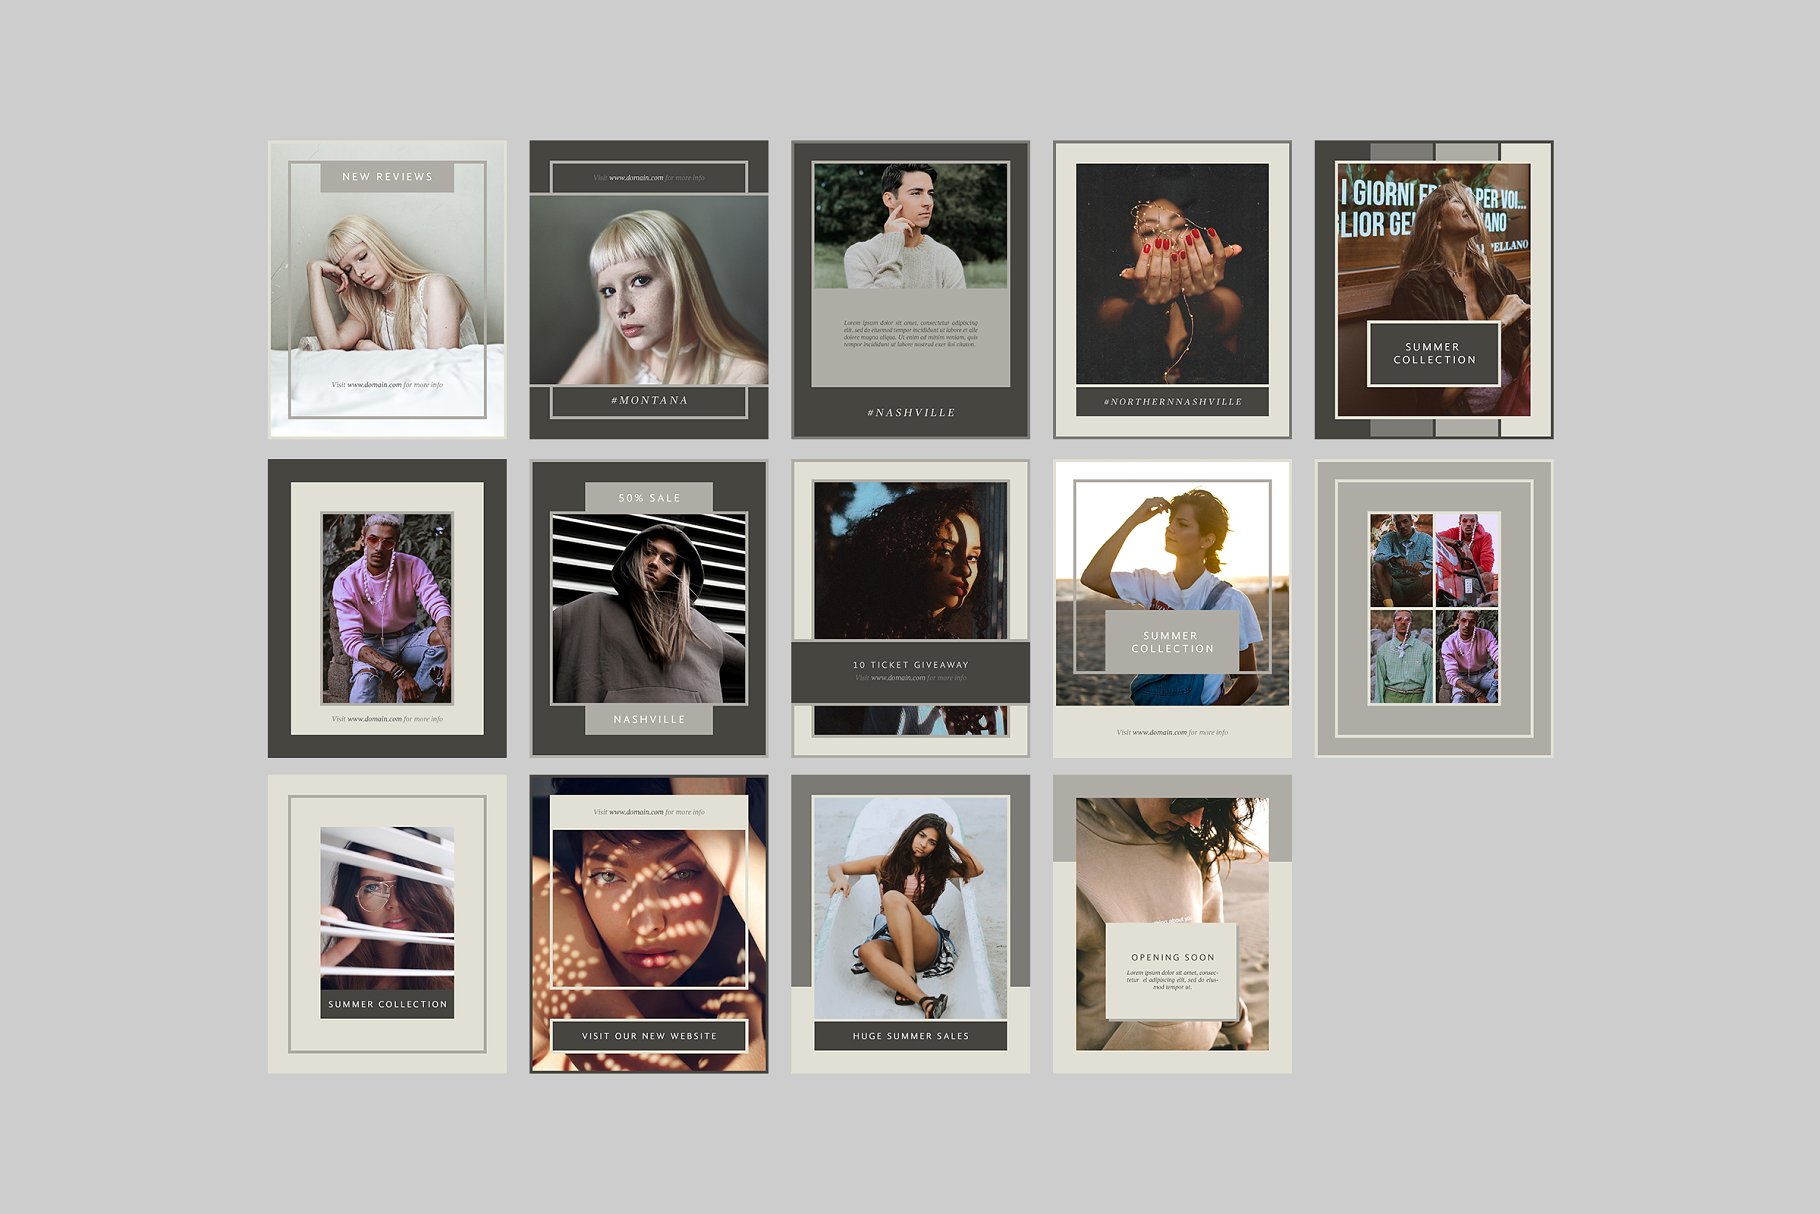 时尚模特摄影主题社交媒体贴图模板素材库精选 Nashville Social Media Templates插图(7)